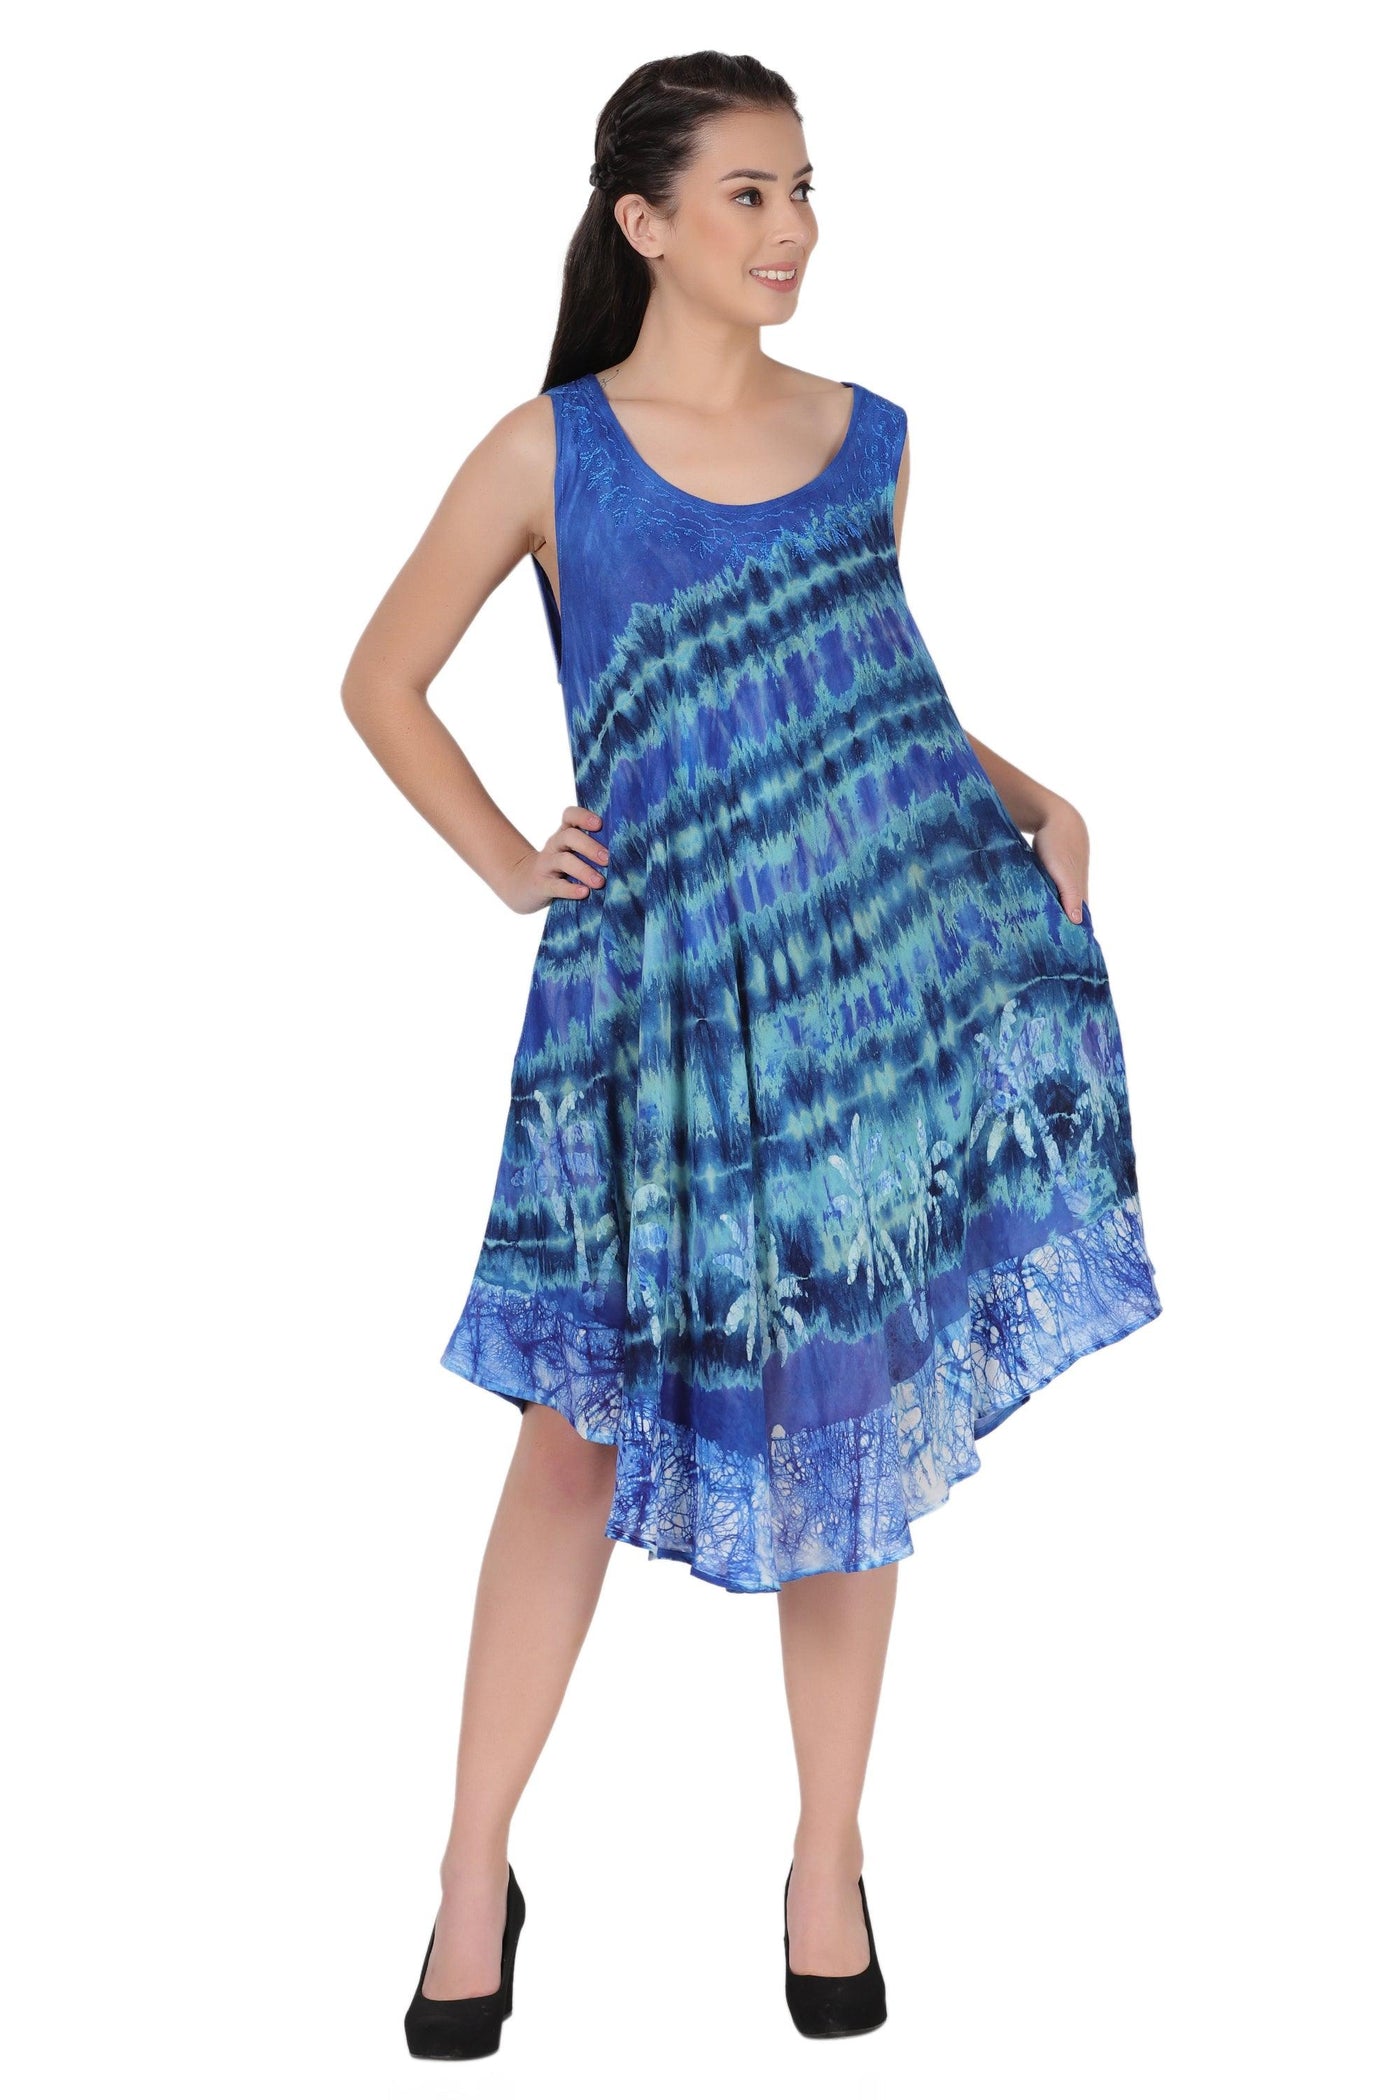 Palm Tree Block Print Dress 422211R  - Advance Apparels Inc